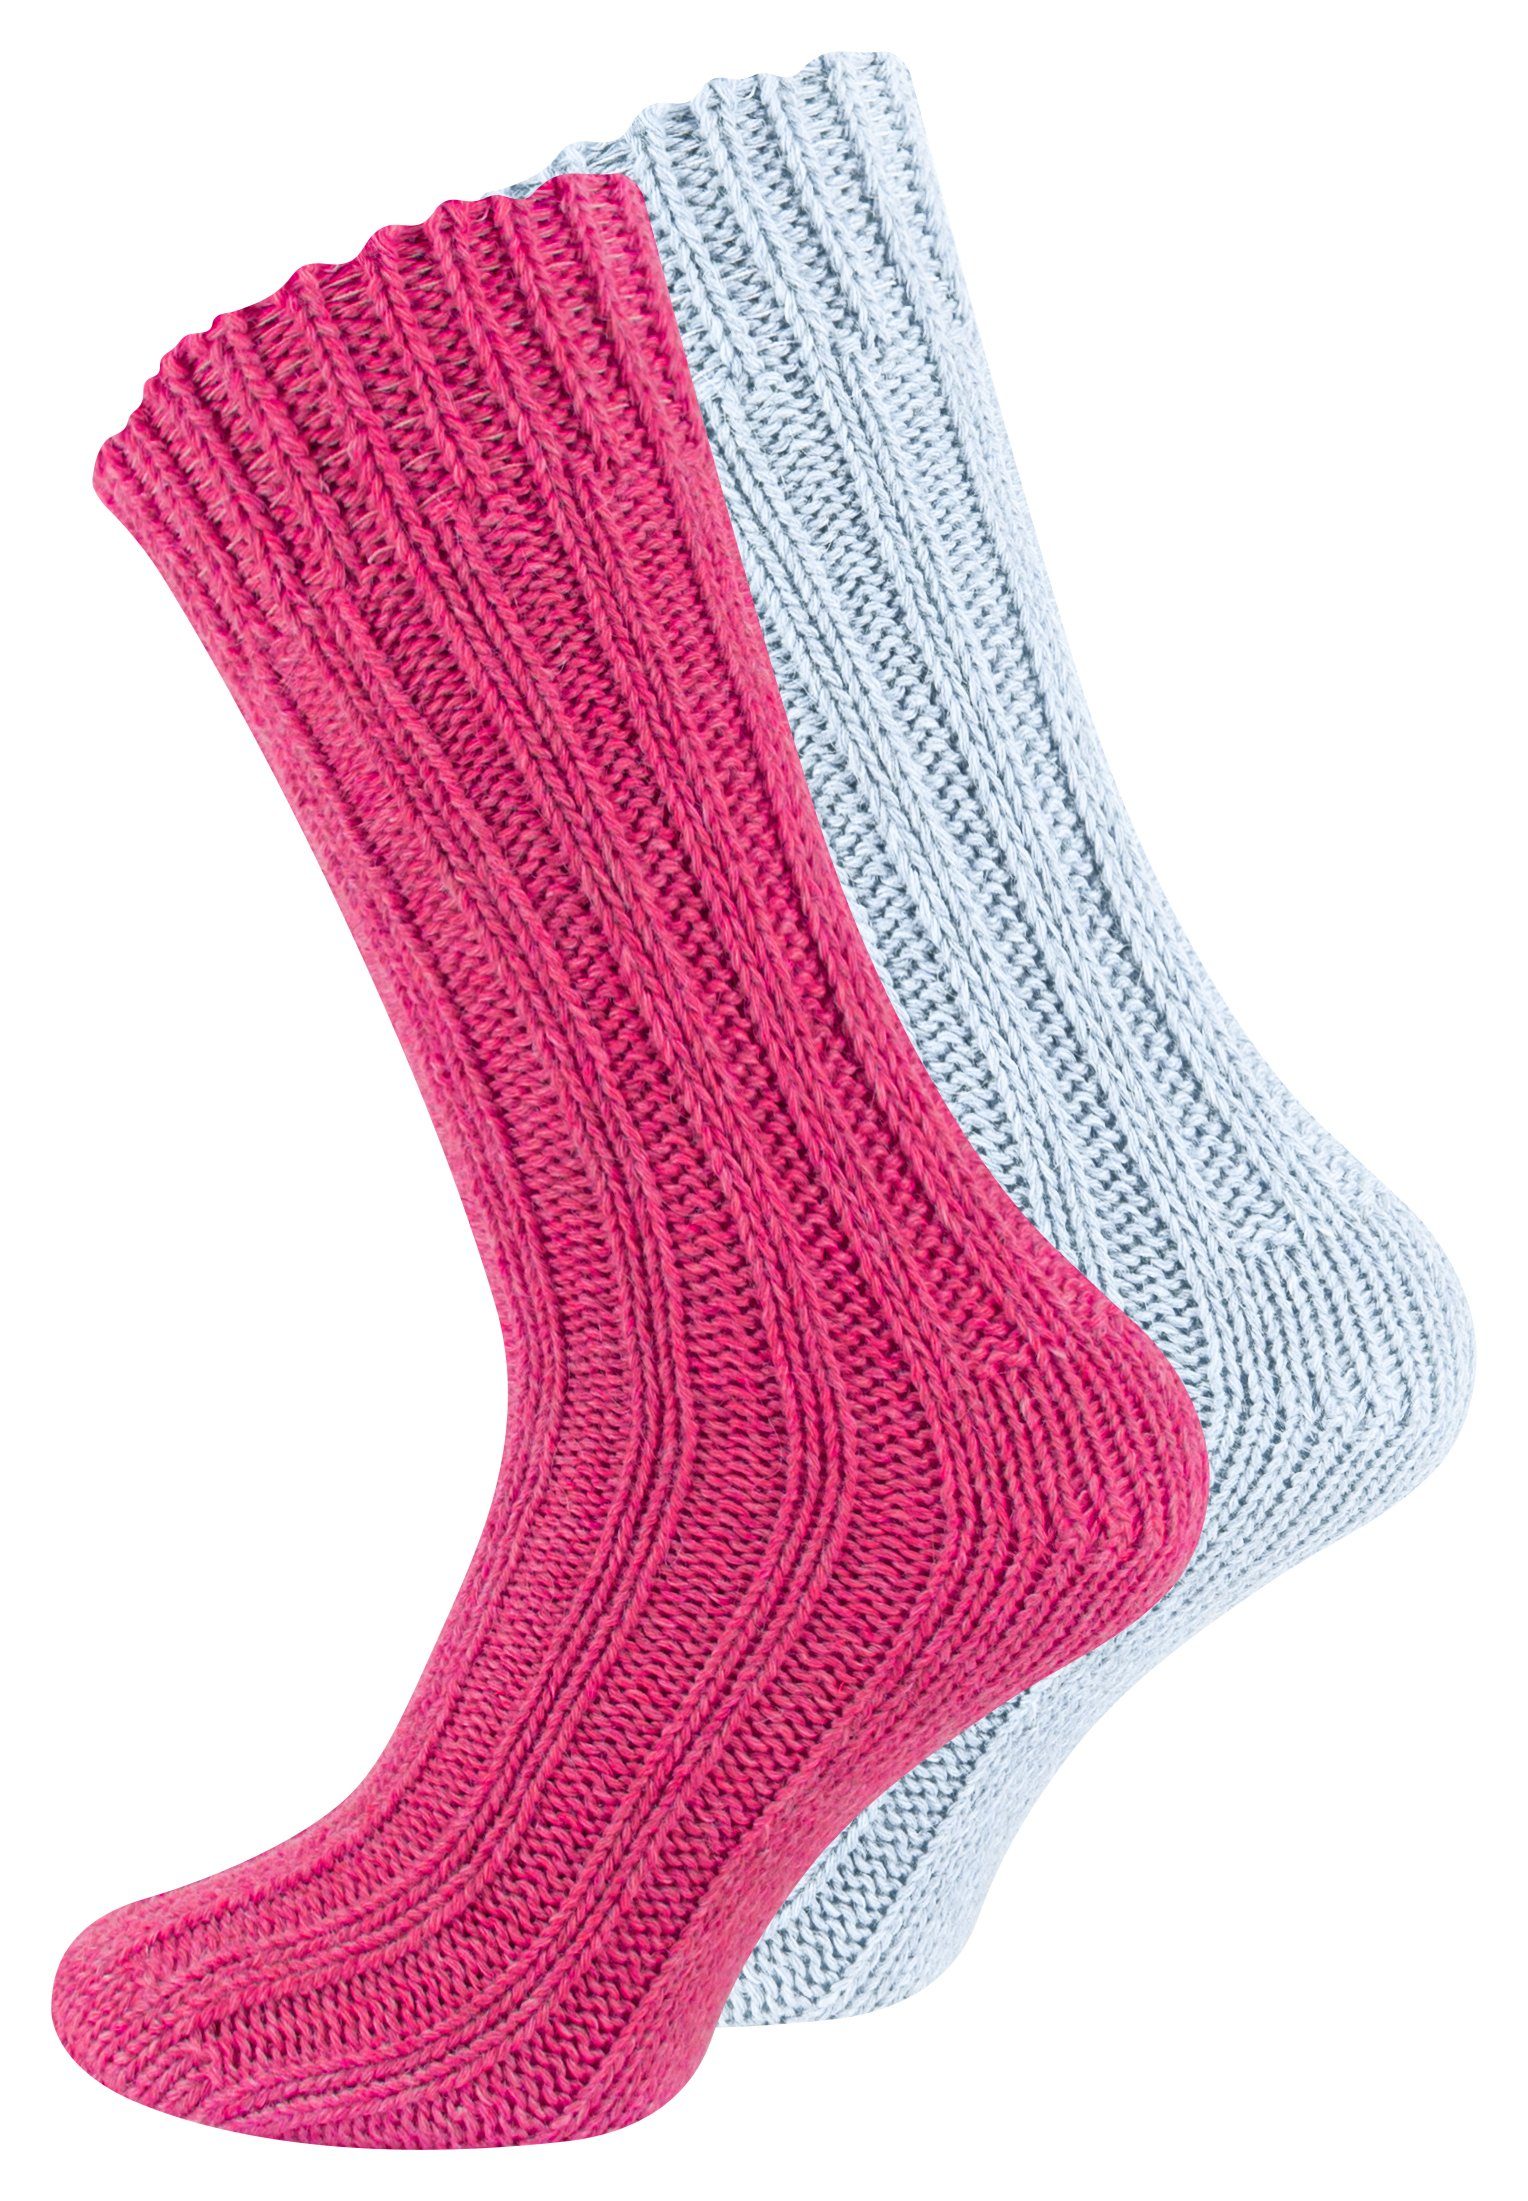 Socken (4-Paar) Alpakasocken und ökologisch Unisex Cotton vorgewaschen gefärbt Pink/Hellblau Prime®